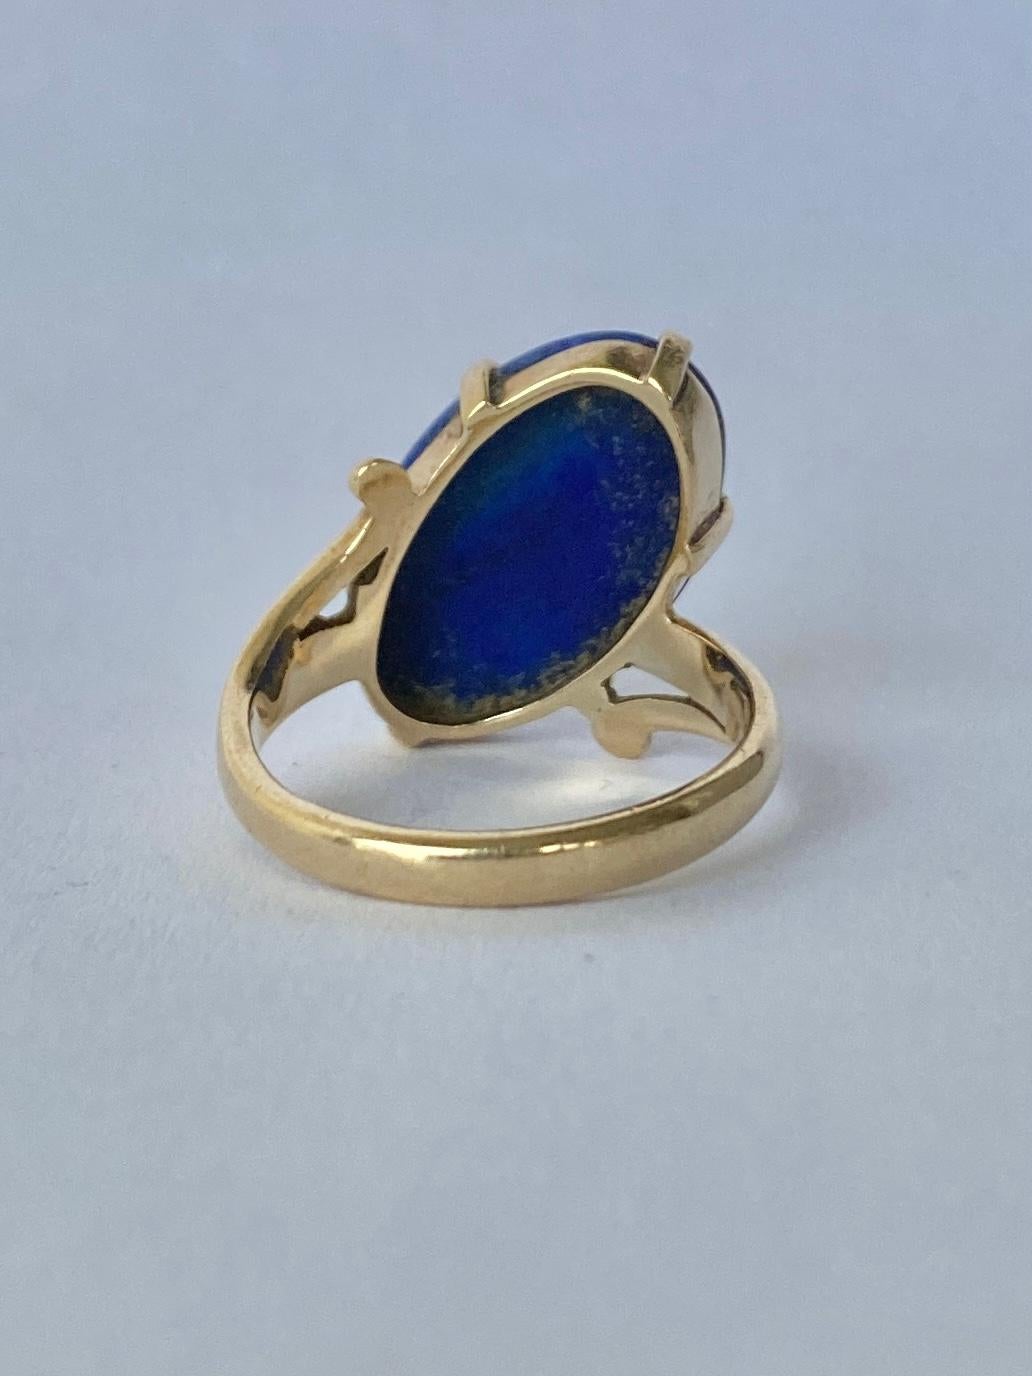 Modern Vintage Lapis Lazuli and 9 Carat Gold Ring